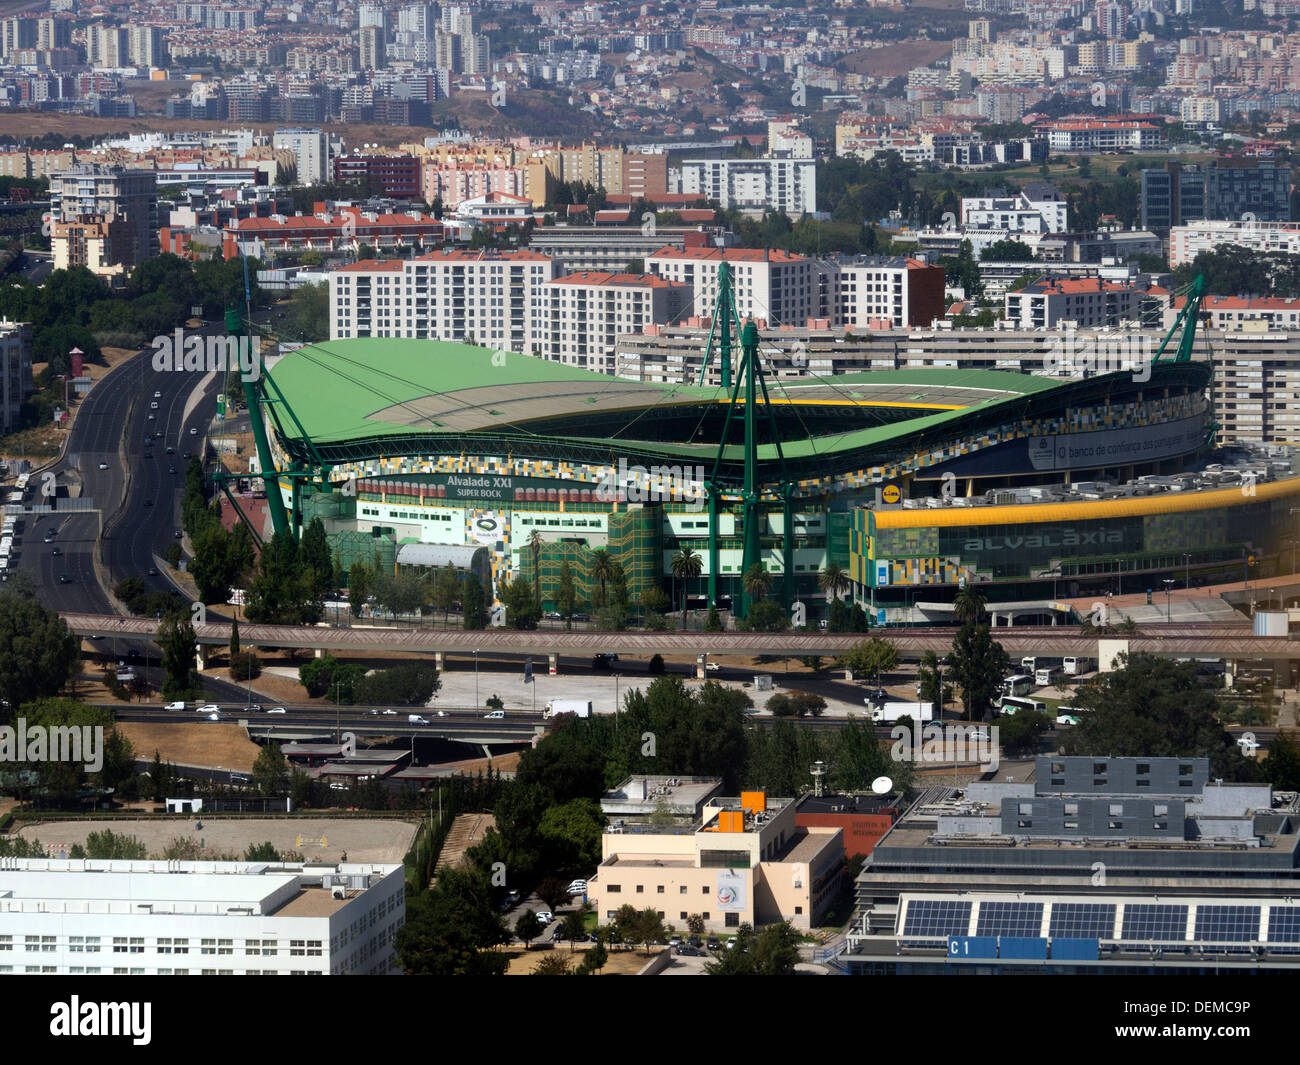 Vue aérienne du Sporting Clube de Portugal stade Alvalade XXI, Lisbonne, Portugal Banque D'Images